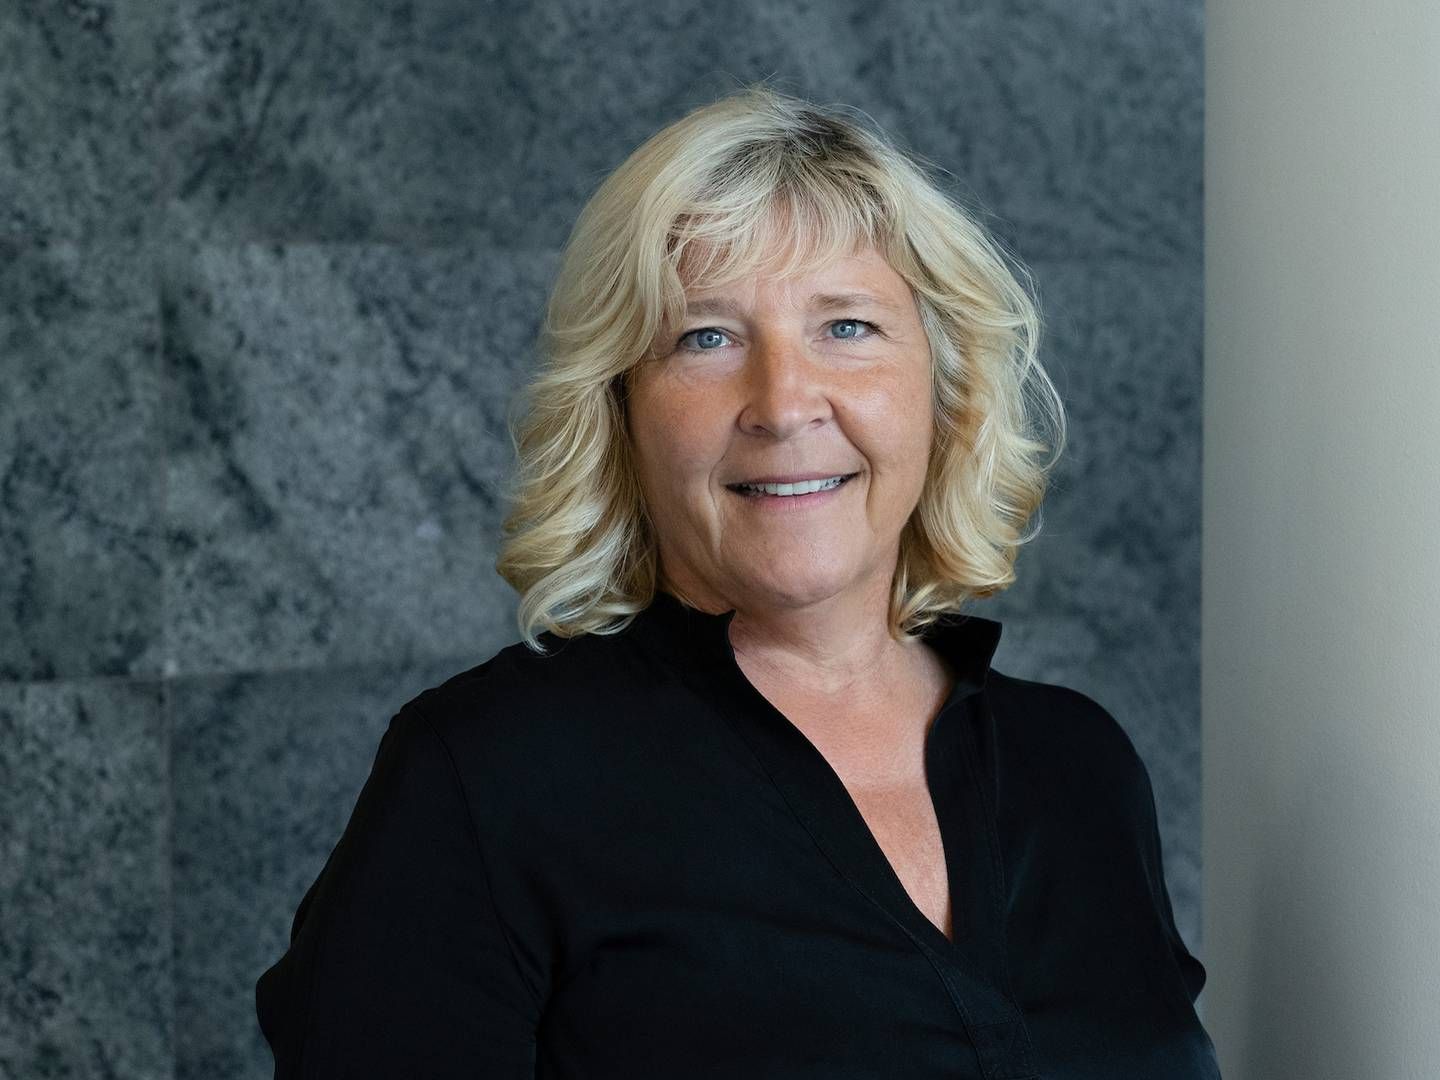 Freja-direktør Christina Jørgensen har ”rigtig, rigtig travlt”, for hun og hendes medarbejdere er netop nu ved at sælge Frejas del af Jernbanebyen, som er det største projekt i selskabets historie. | Foto: PR / Freja Ejendomme